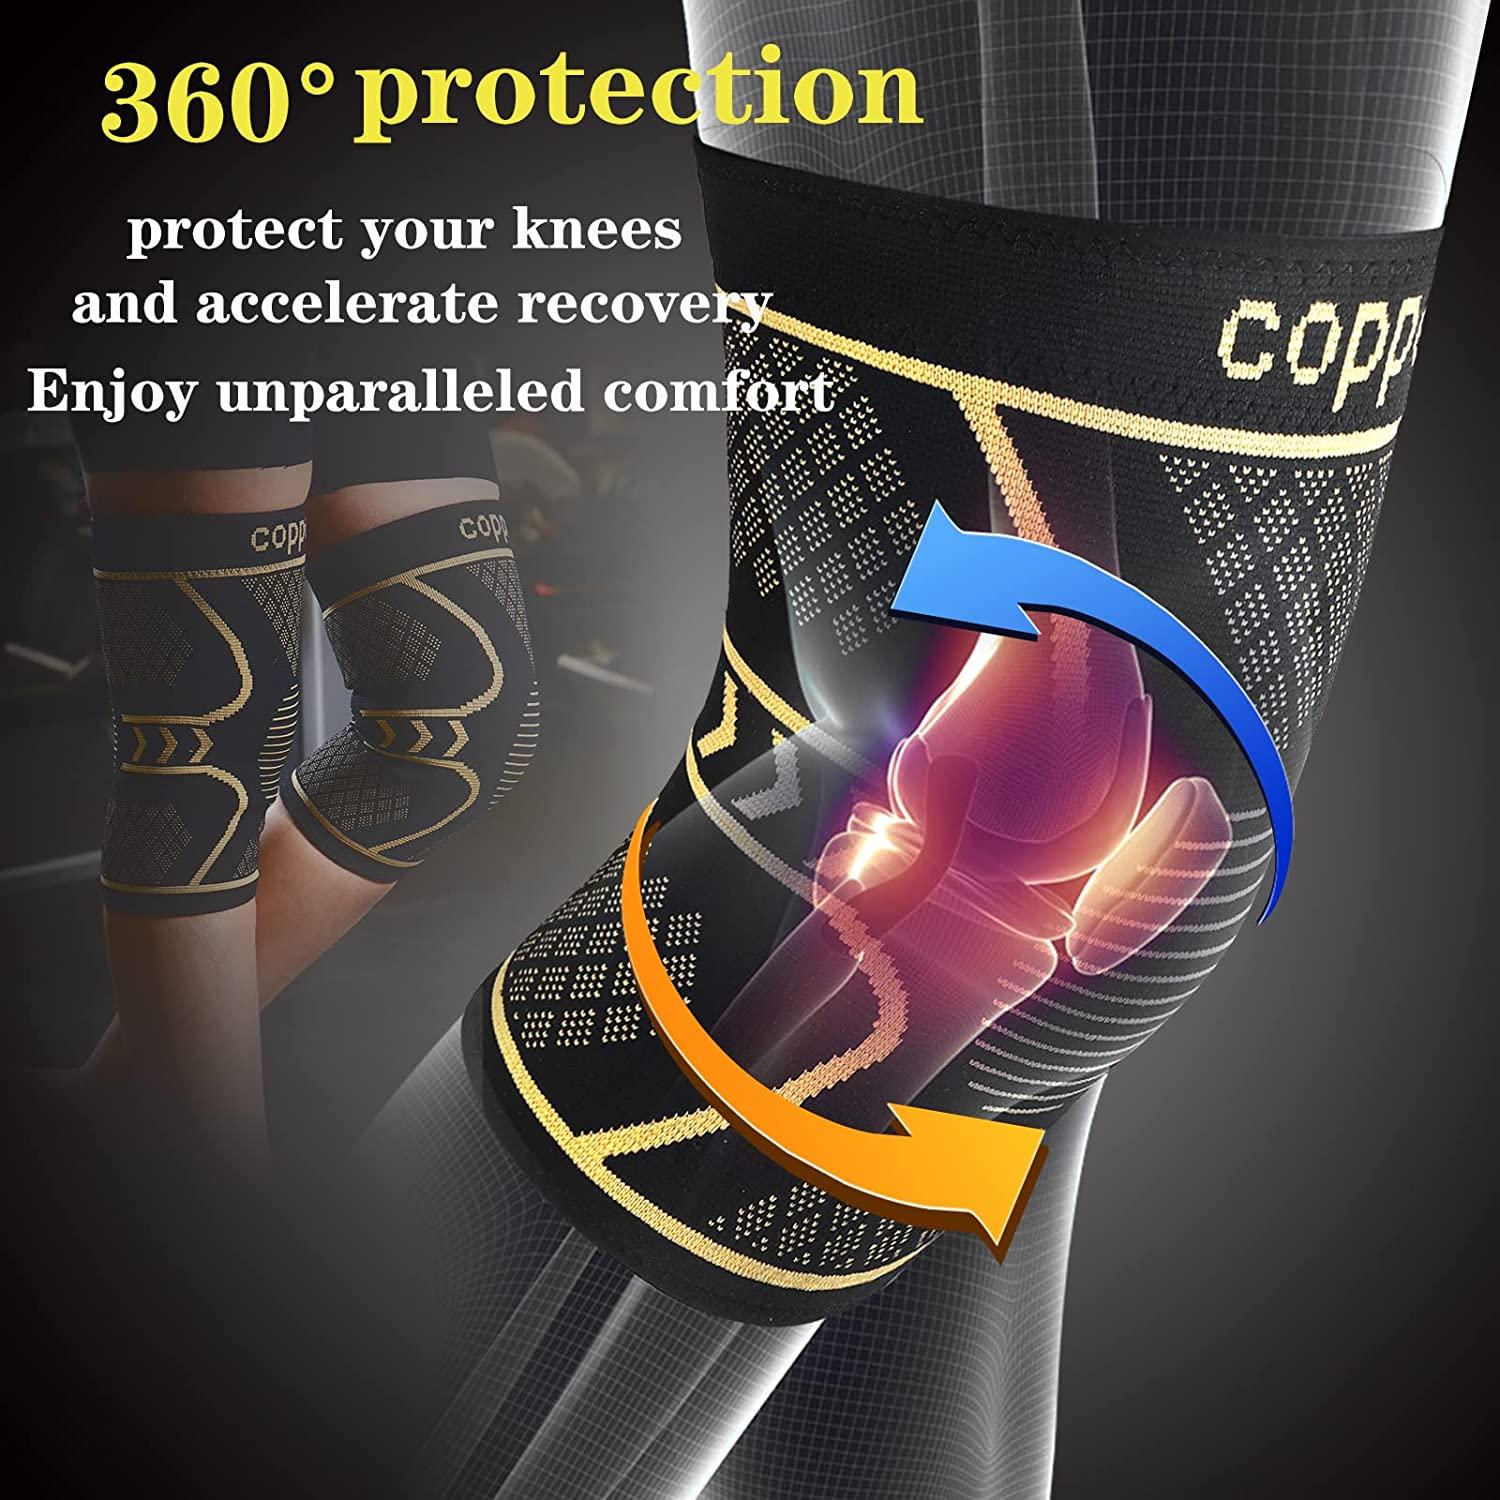 2PK Copper Knee Brace for Arthritis Pain Support-Copper knee